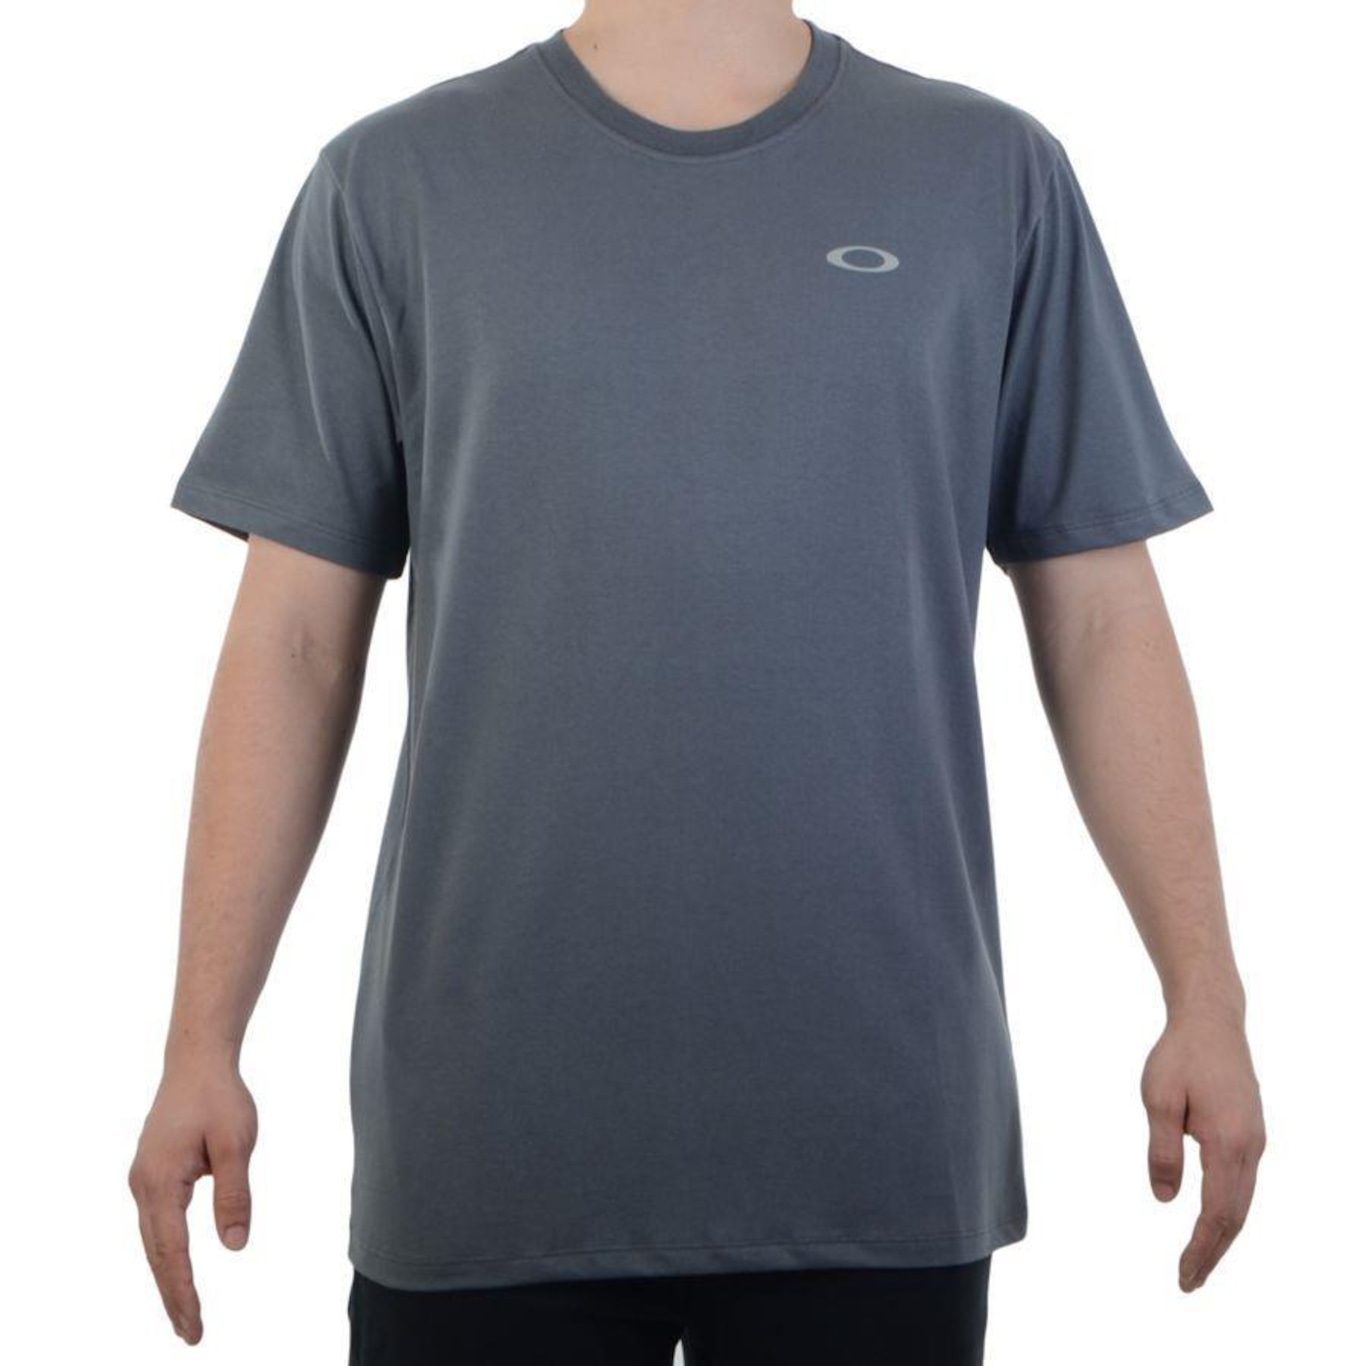 Kit Camiseta Oakley Ellipse Sports c/ 2 Peças Masculina